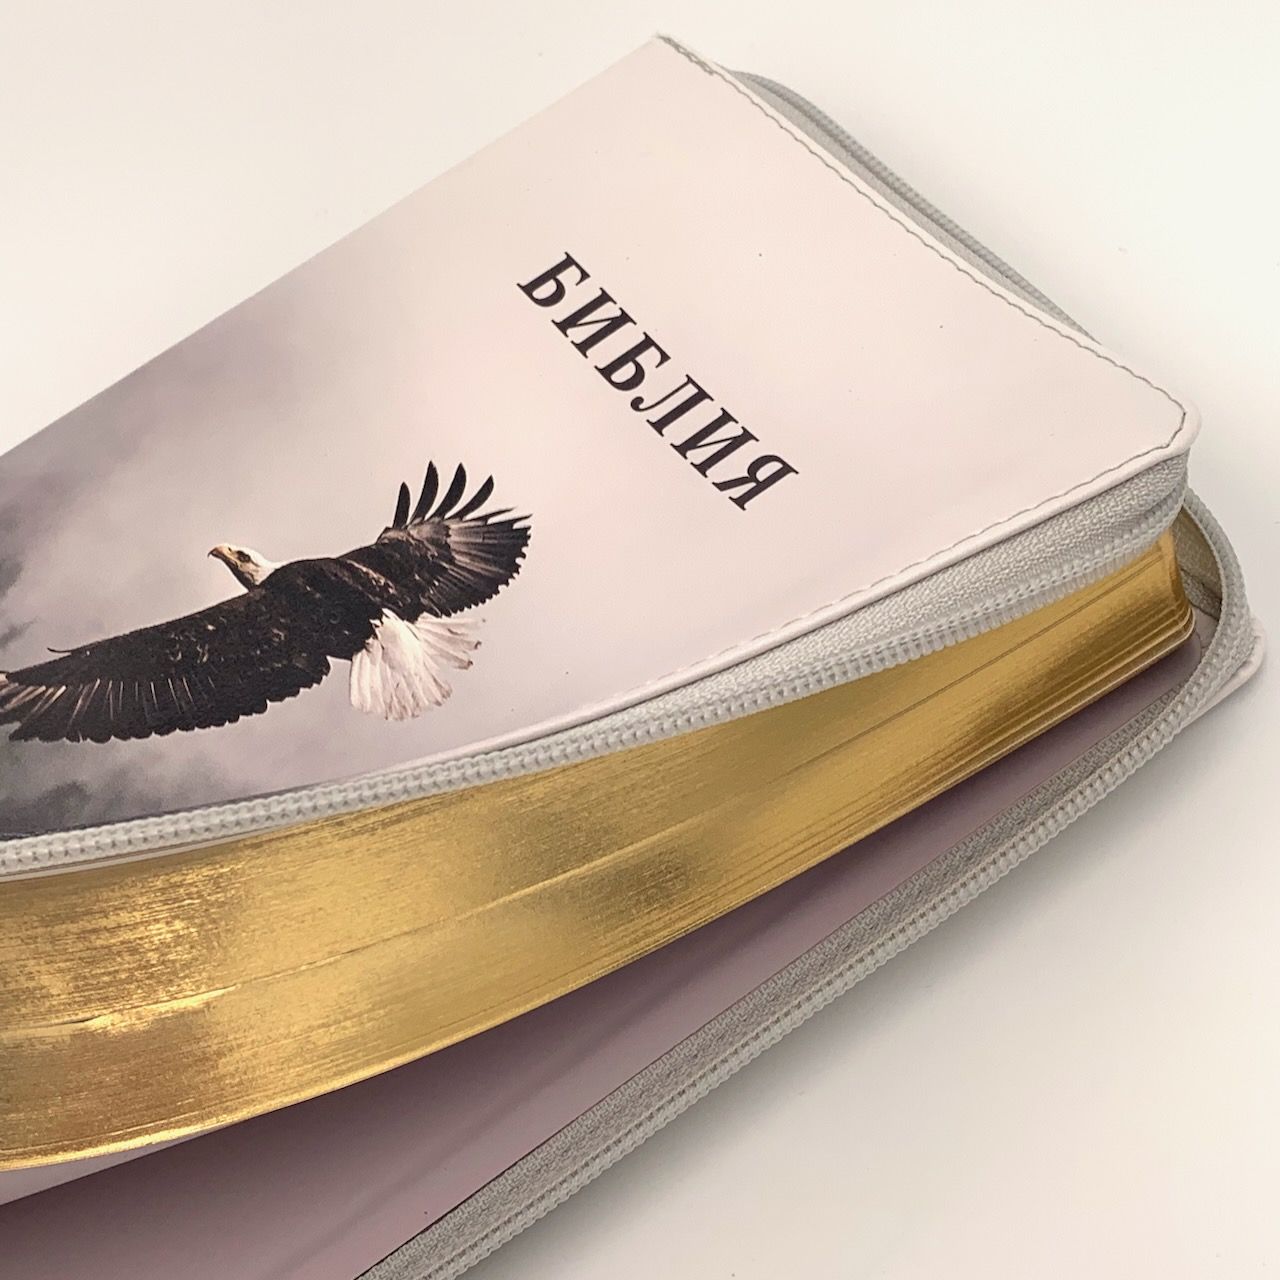 Библия 055z код K1 переплет из искусственной кожи на молнии, фотопечать, дизайн орел, средний формат, паралельные места по центру страницы, золотой обрез, крупный шрифт